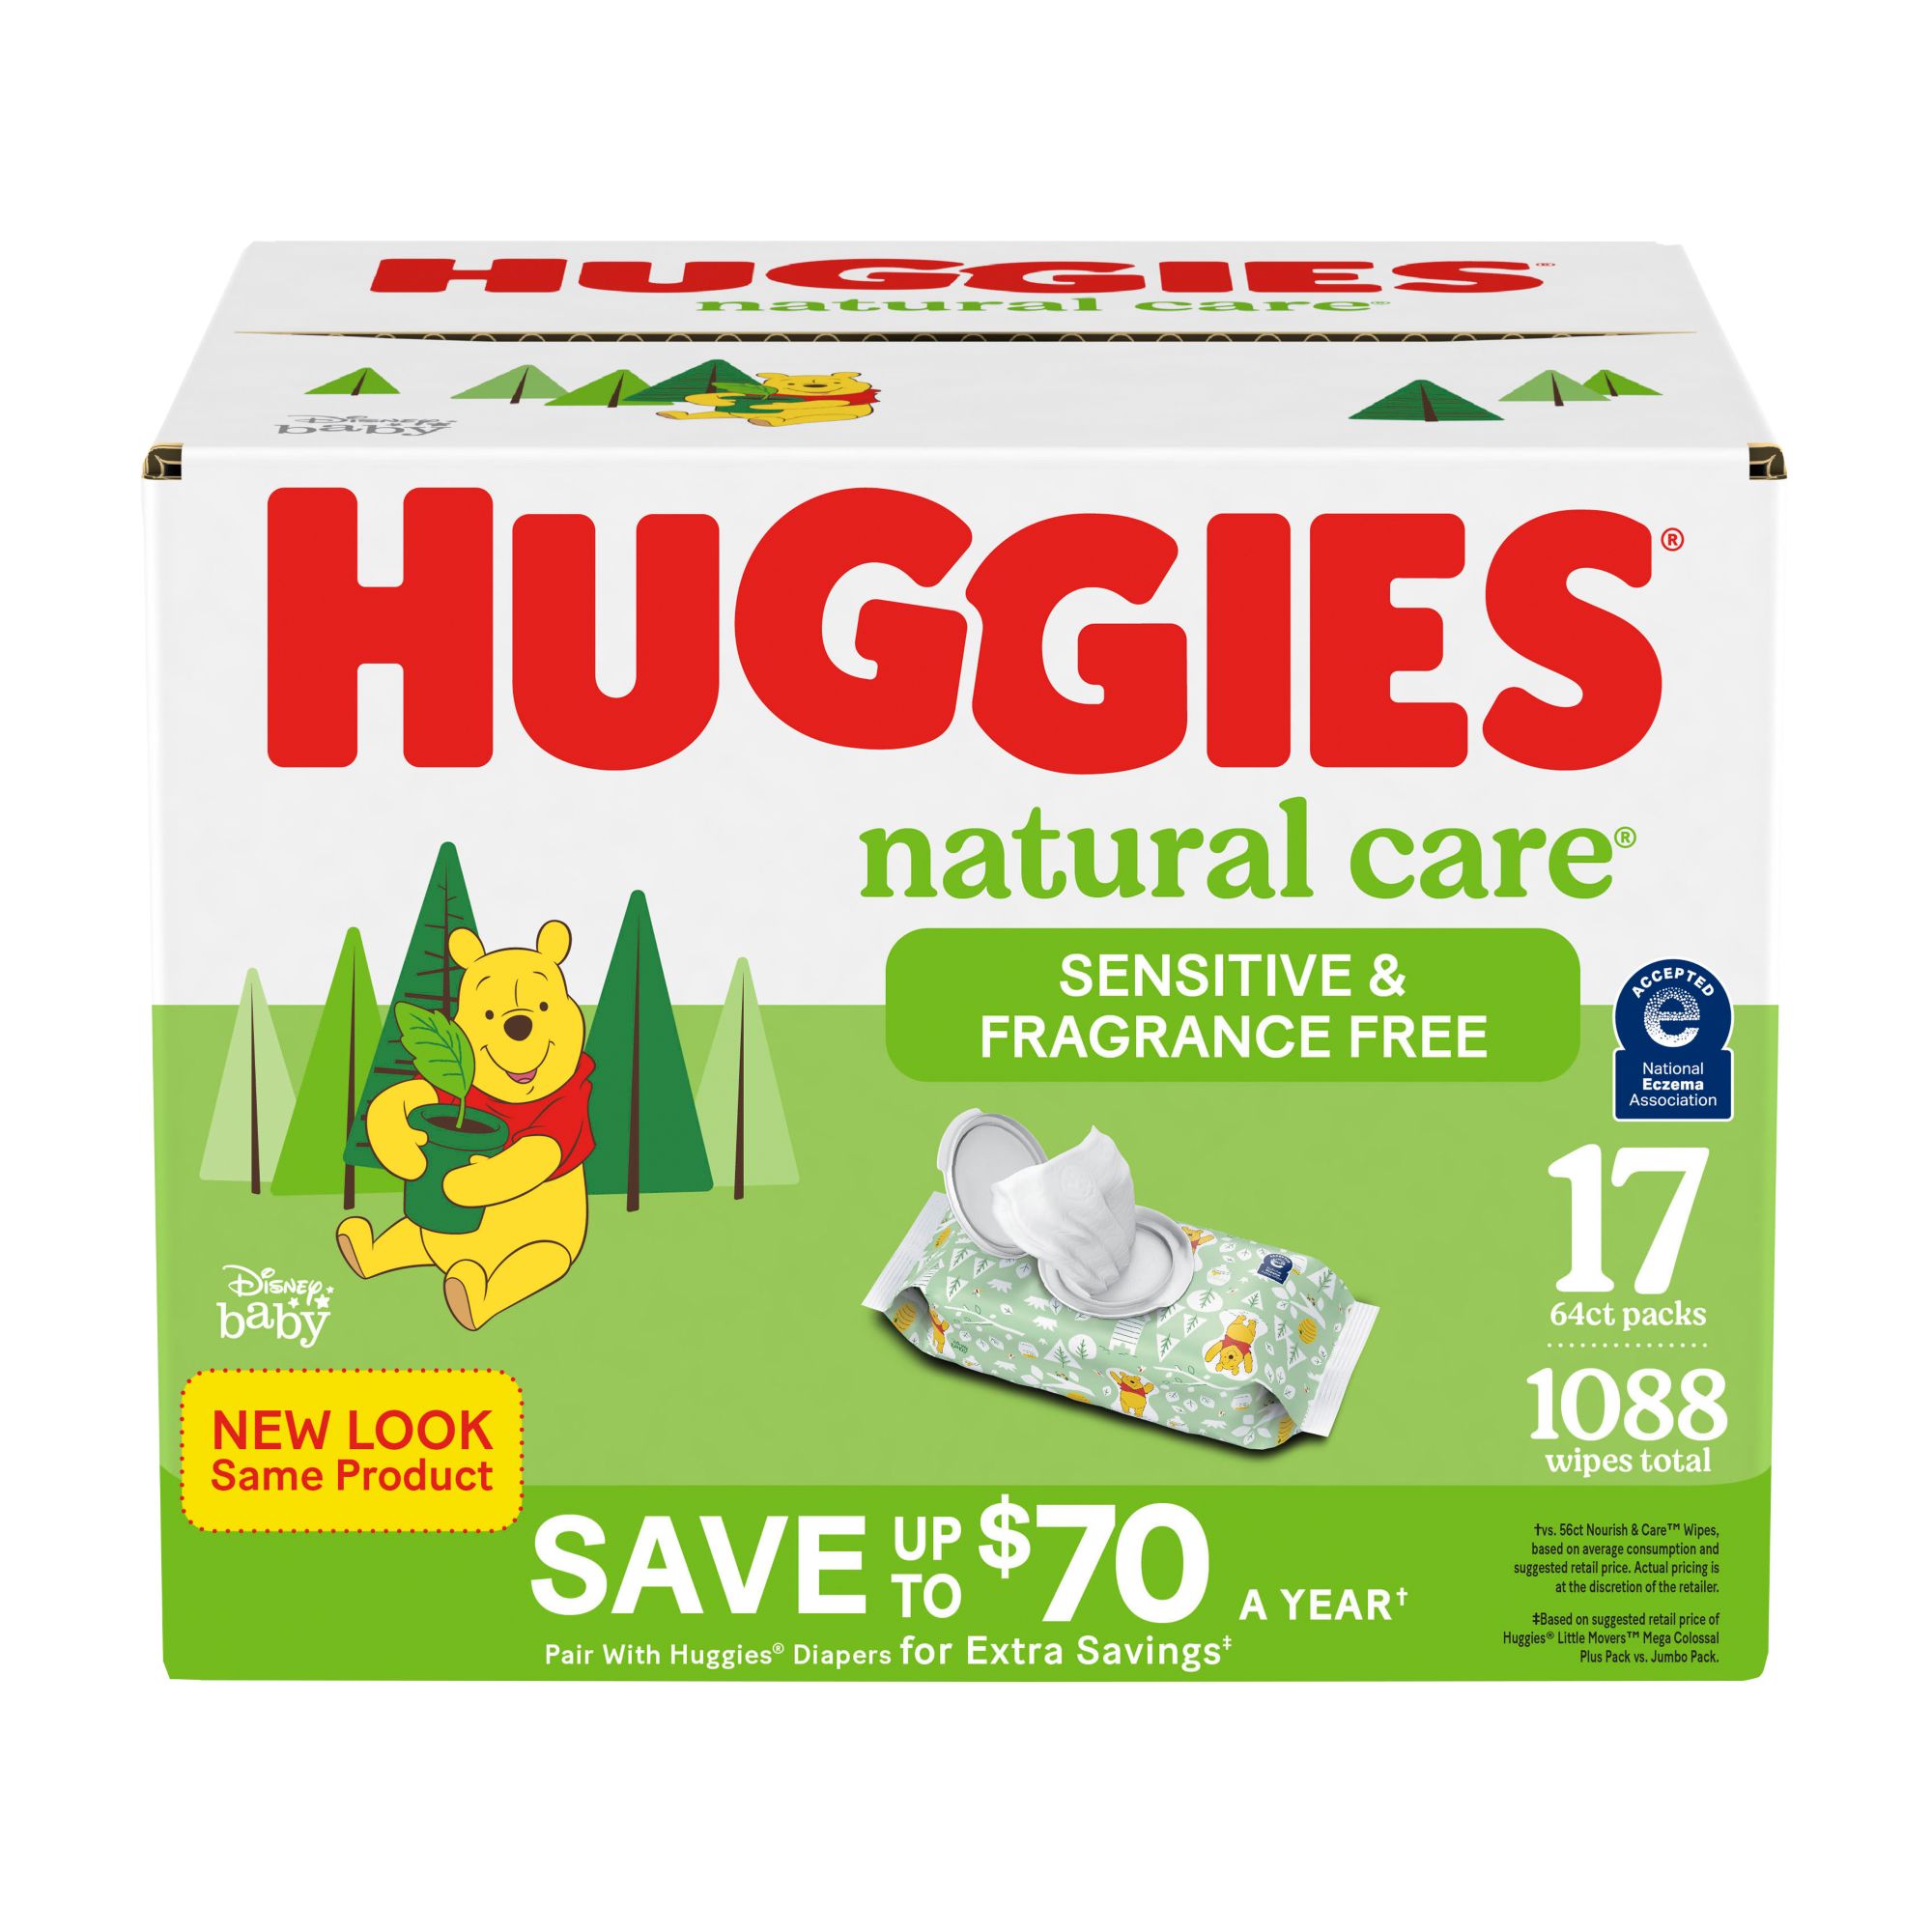 huggies natural